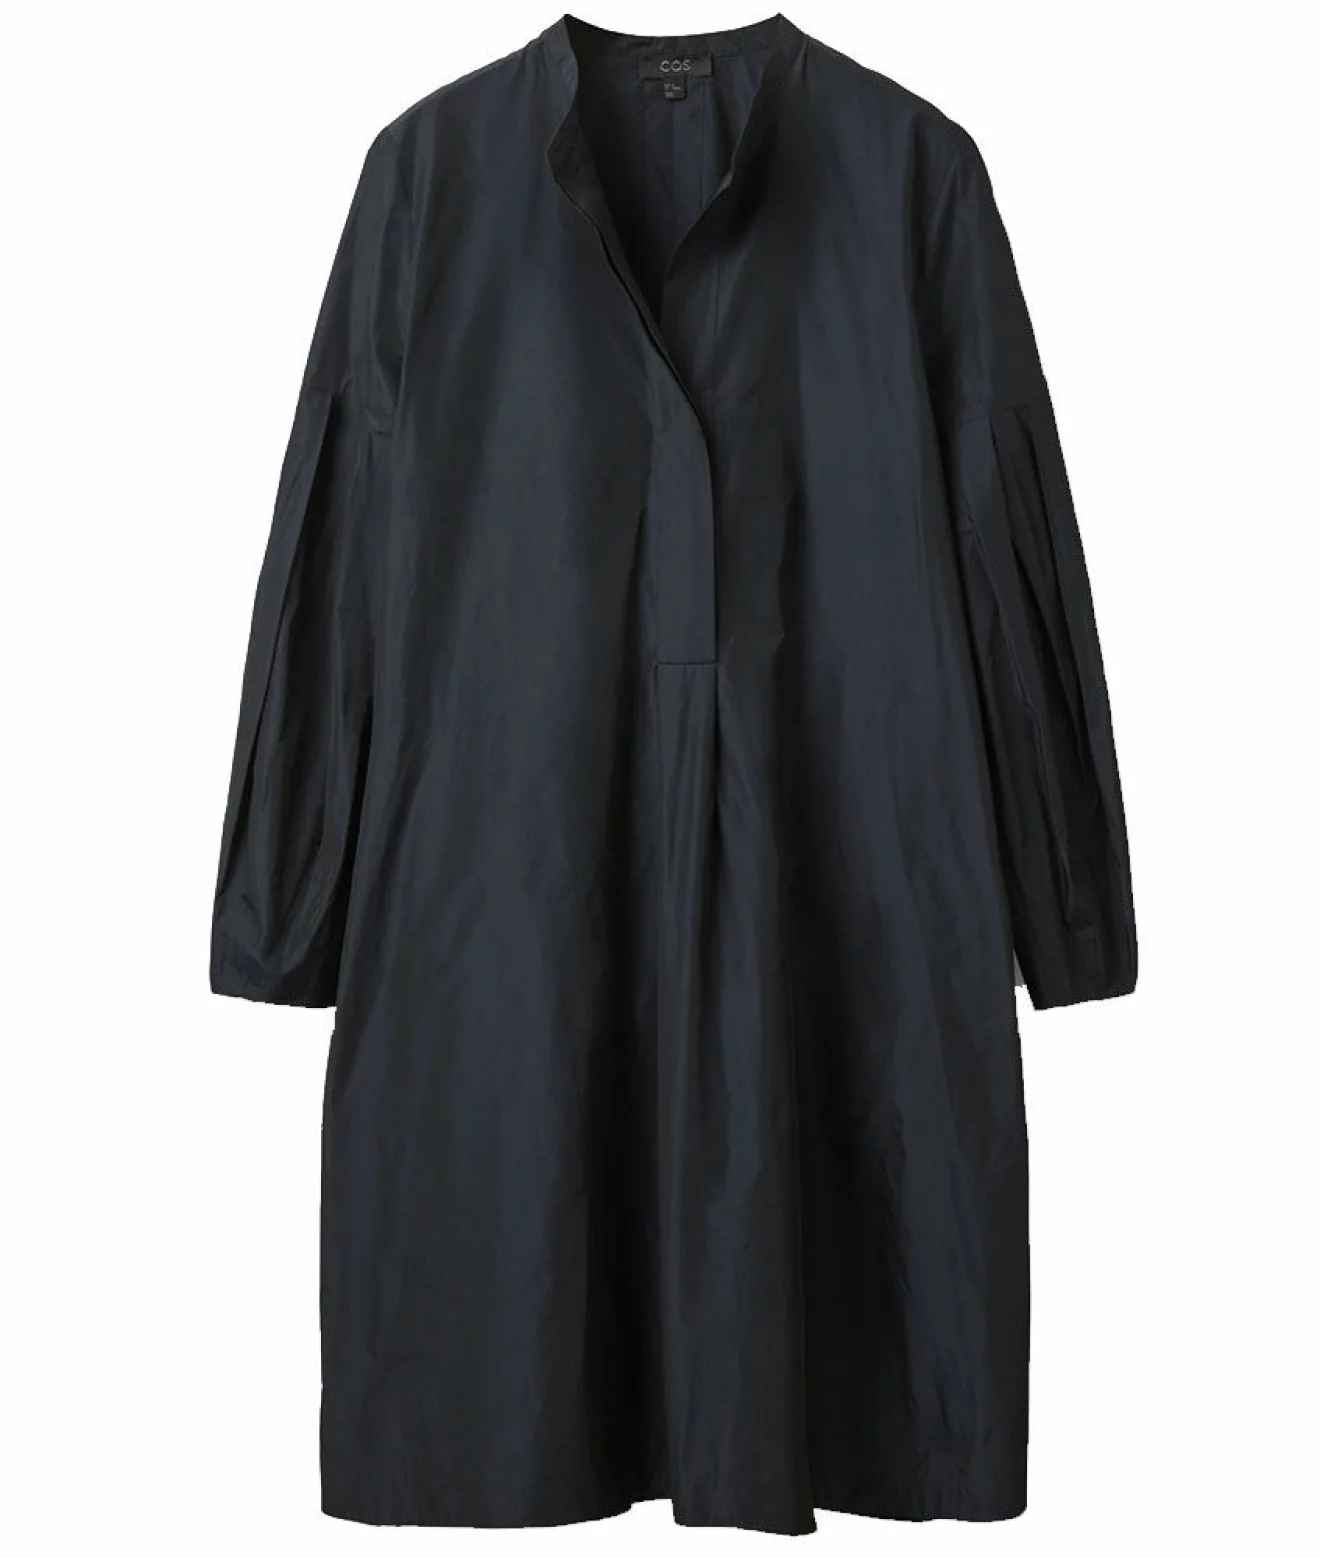 svart a-linjeformad klänning